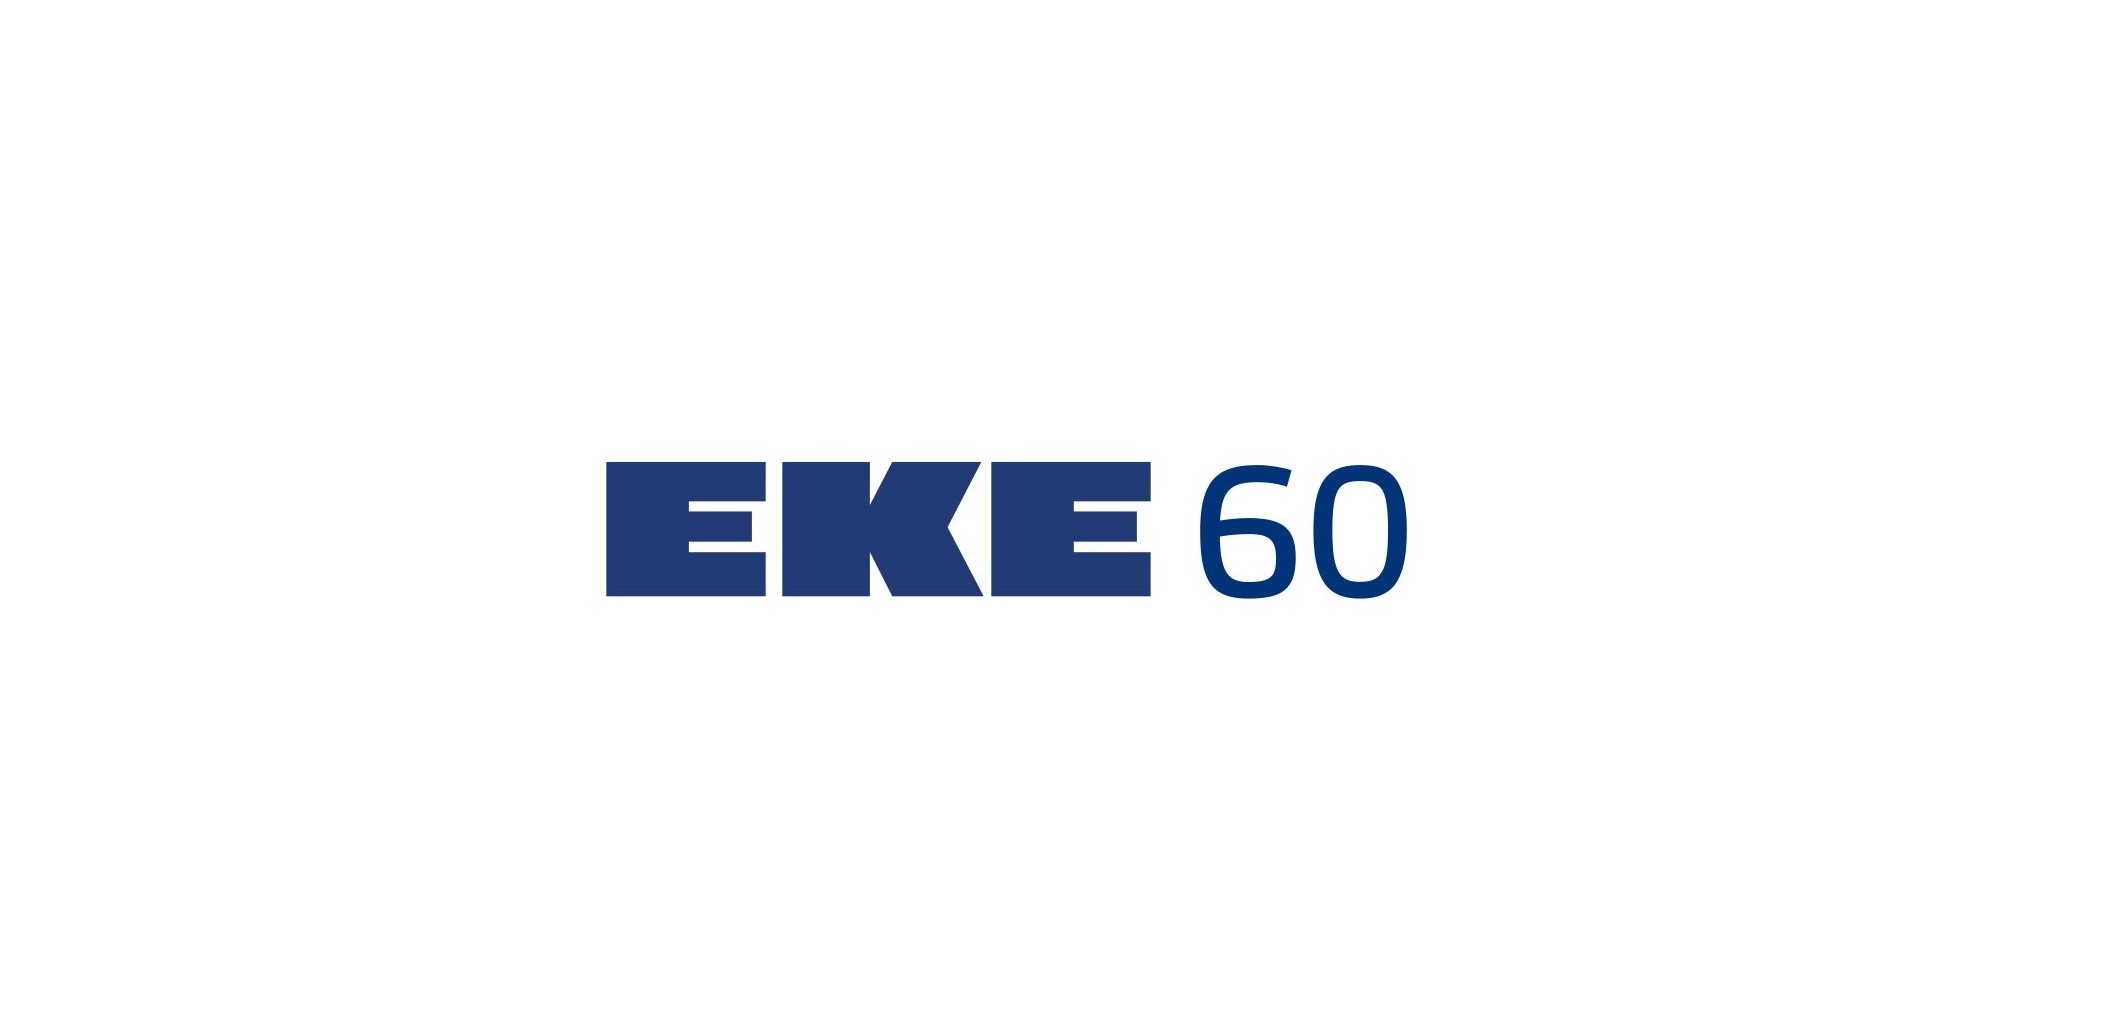 EKE-Bolagen har gått sin egen väg redan i 60 år